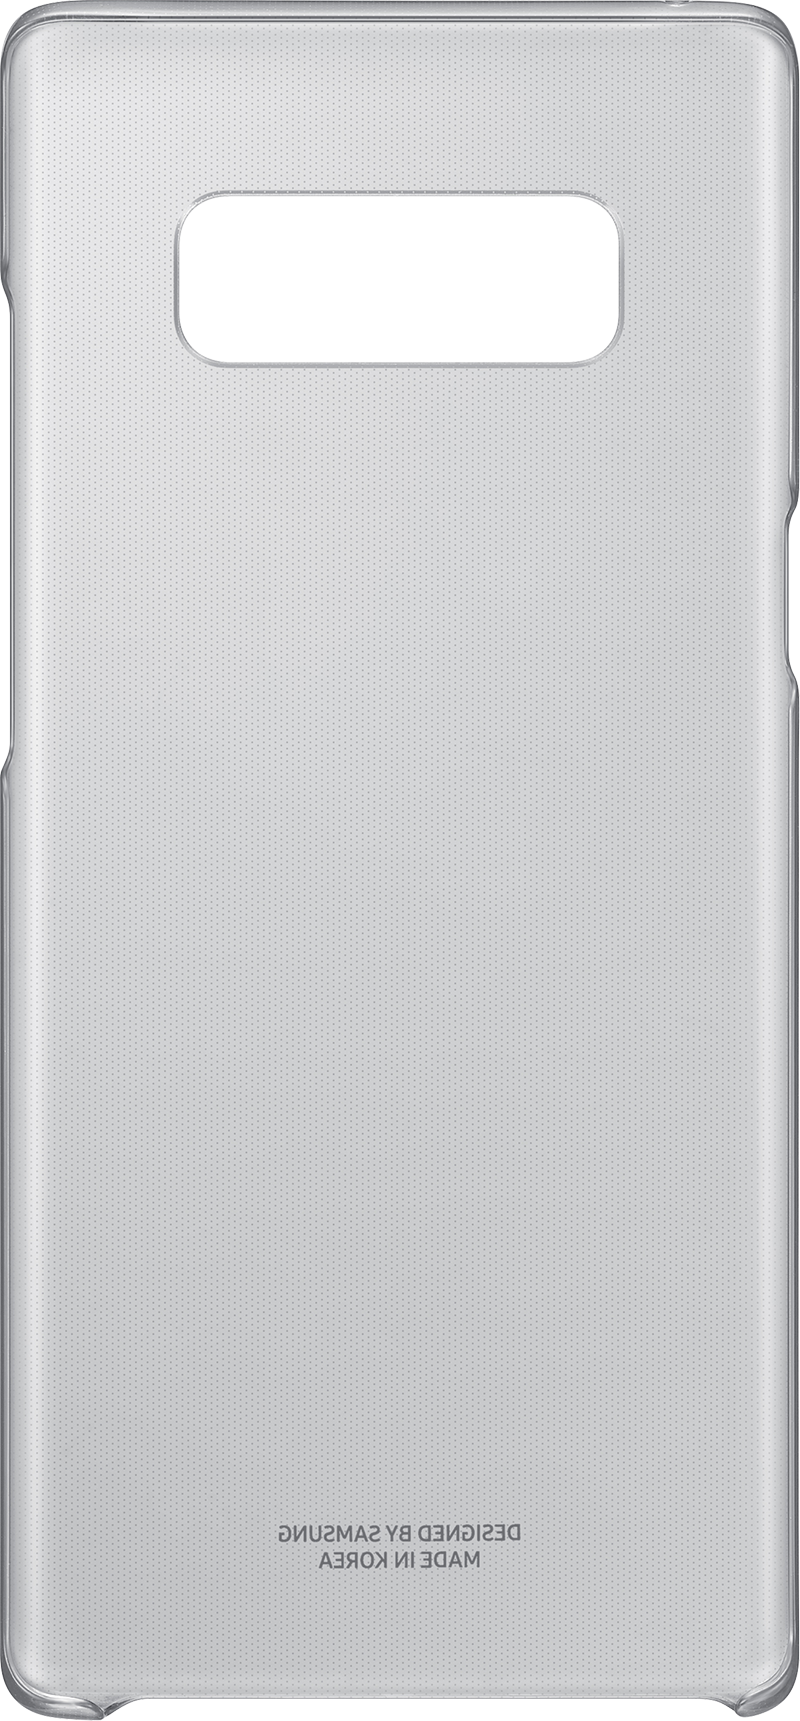 Coque transparente Galaxy Note 8